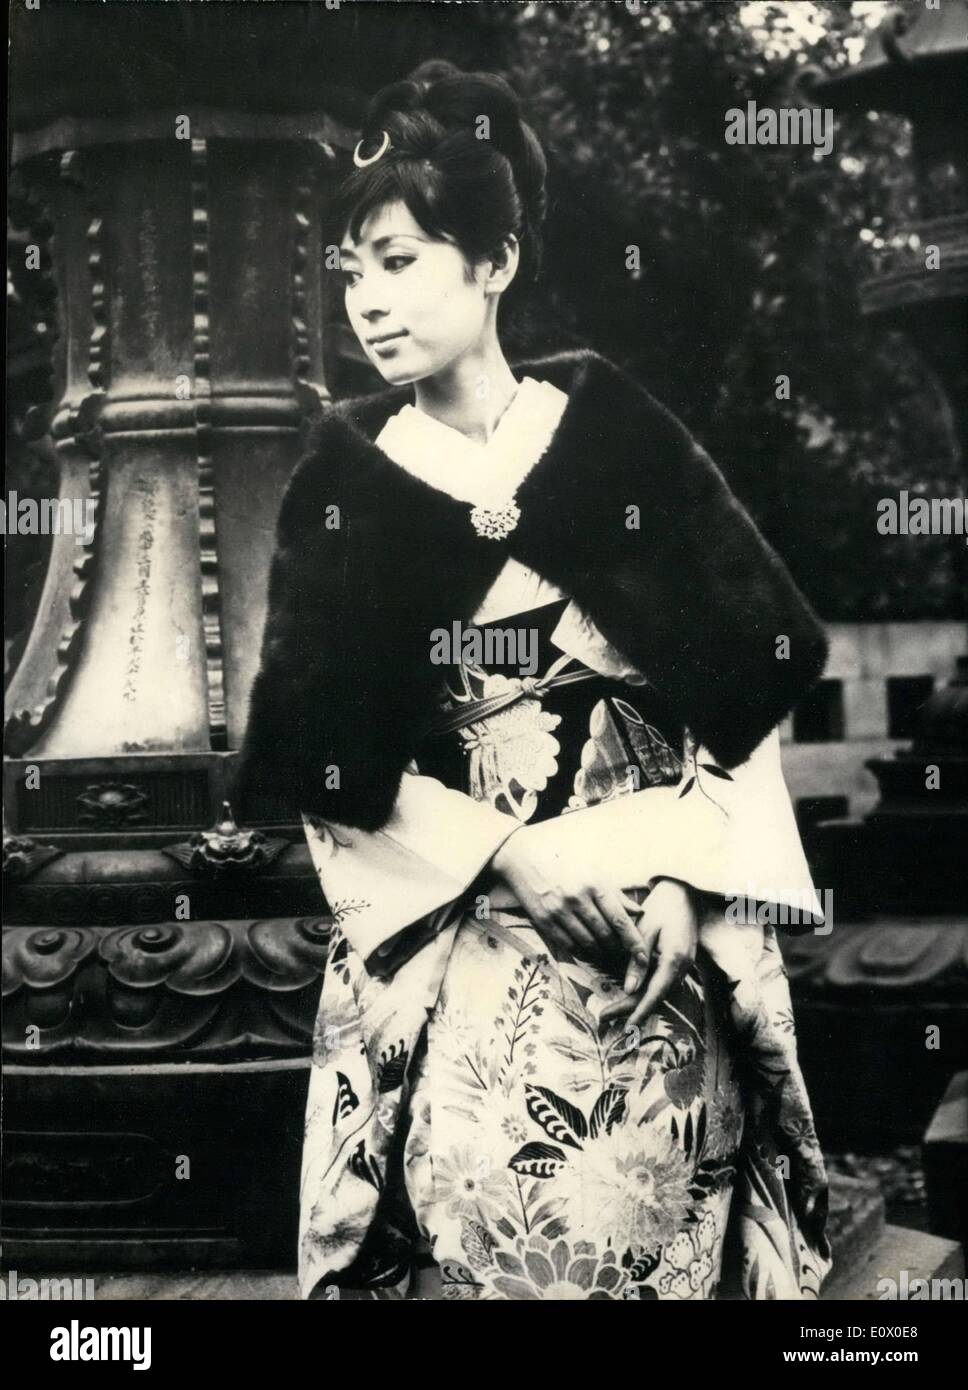 11. November 1964 - Pelz Mode In Japan. Eine bekannte Paris Kürschner zeigt jetzt seine Kollektionen in Tokio, die speziell für Stockfoto